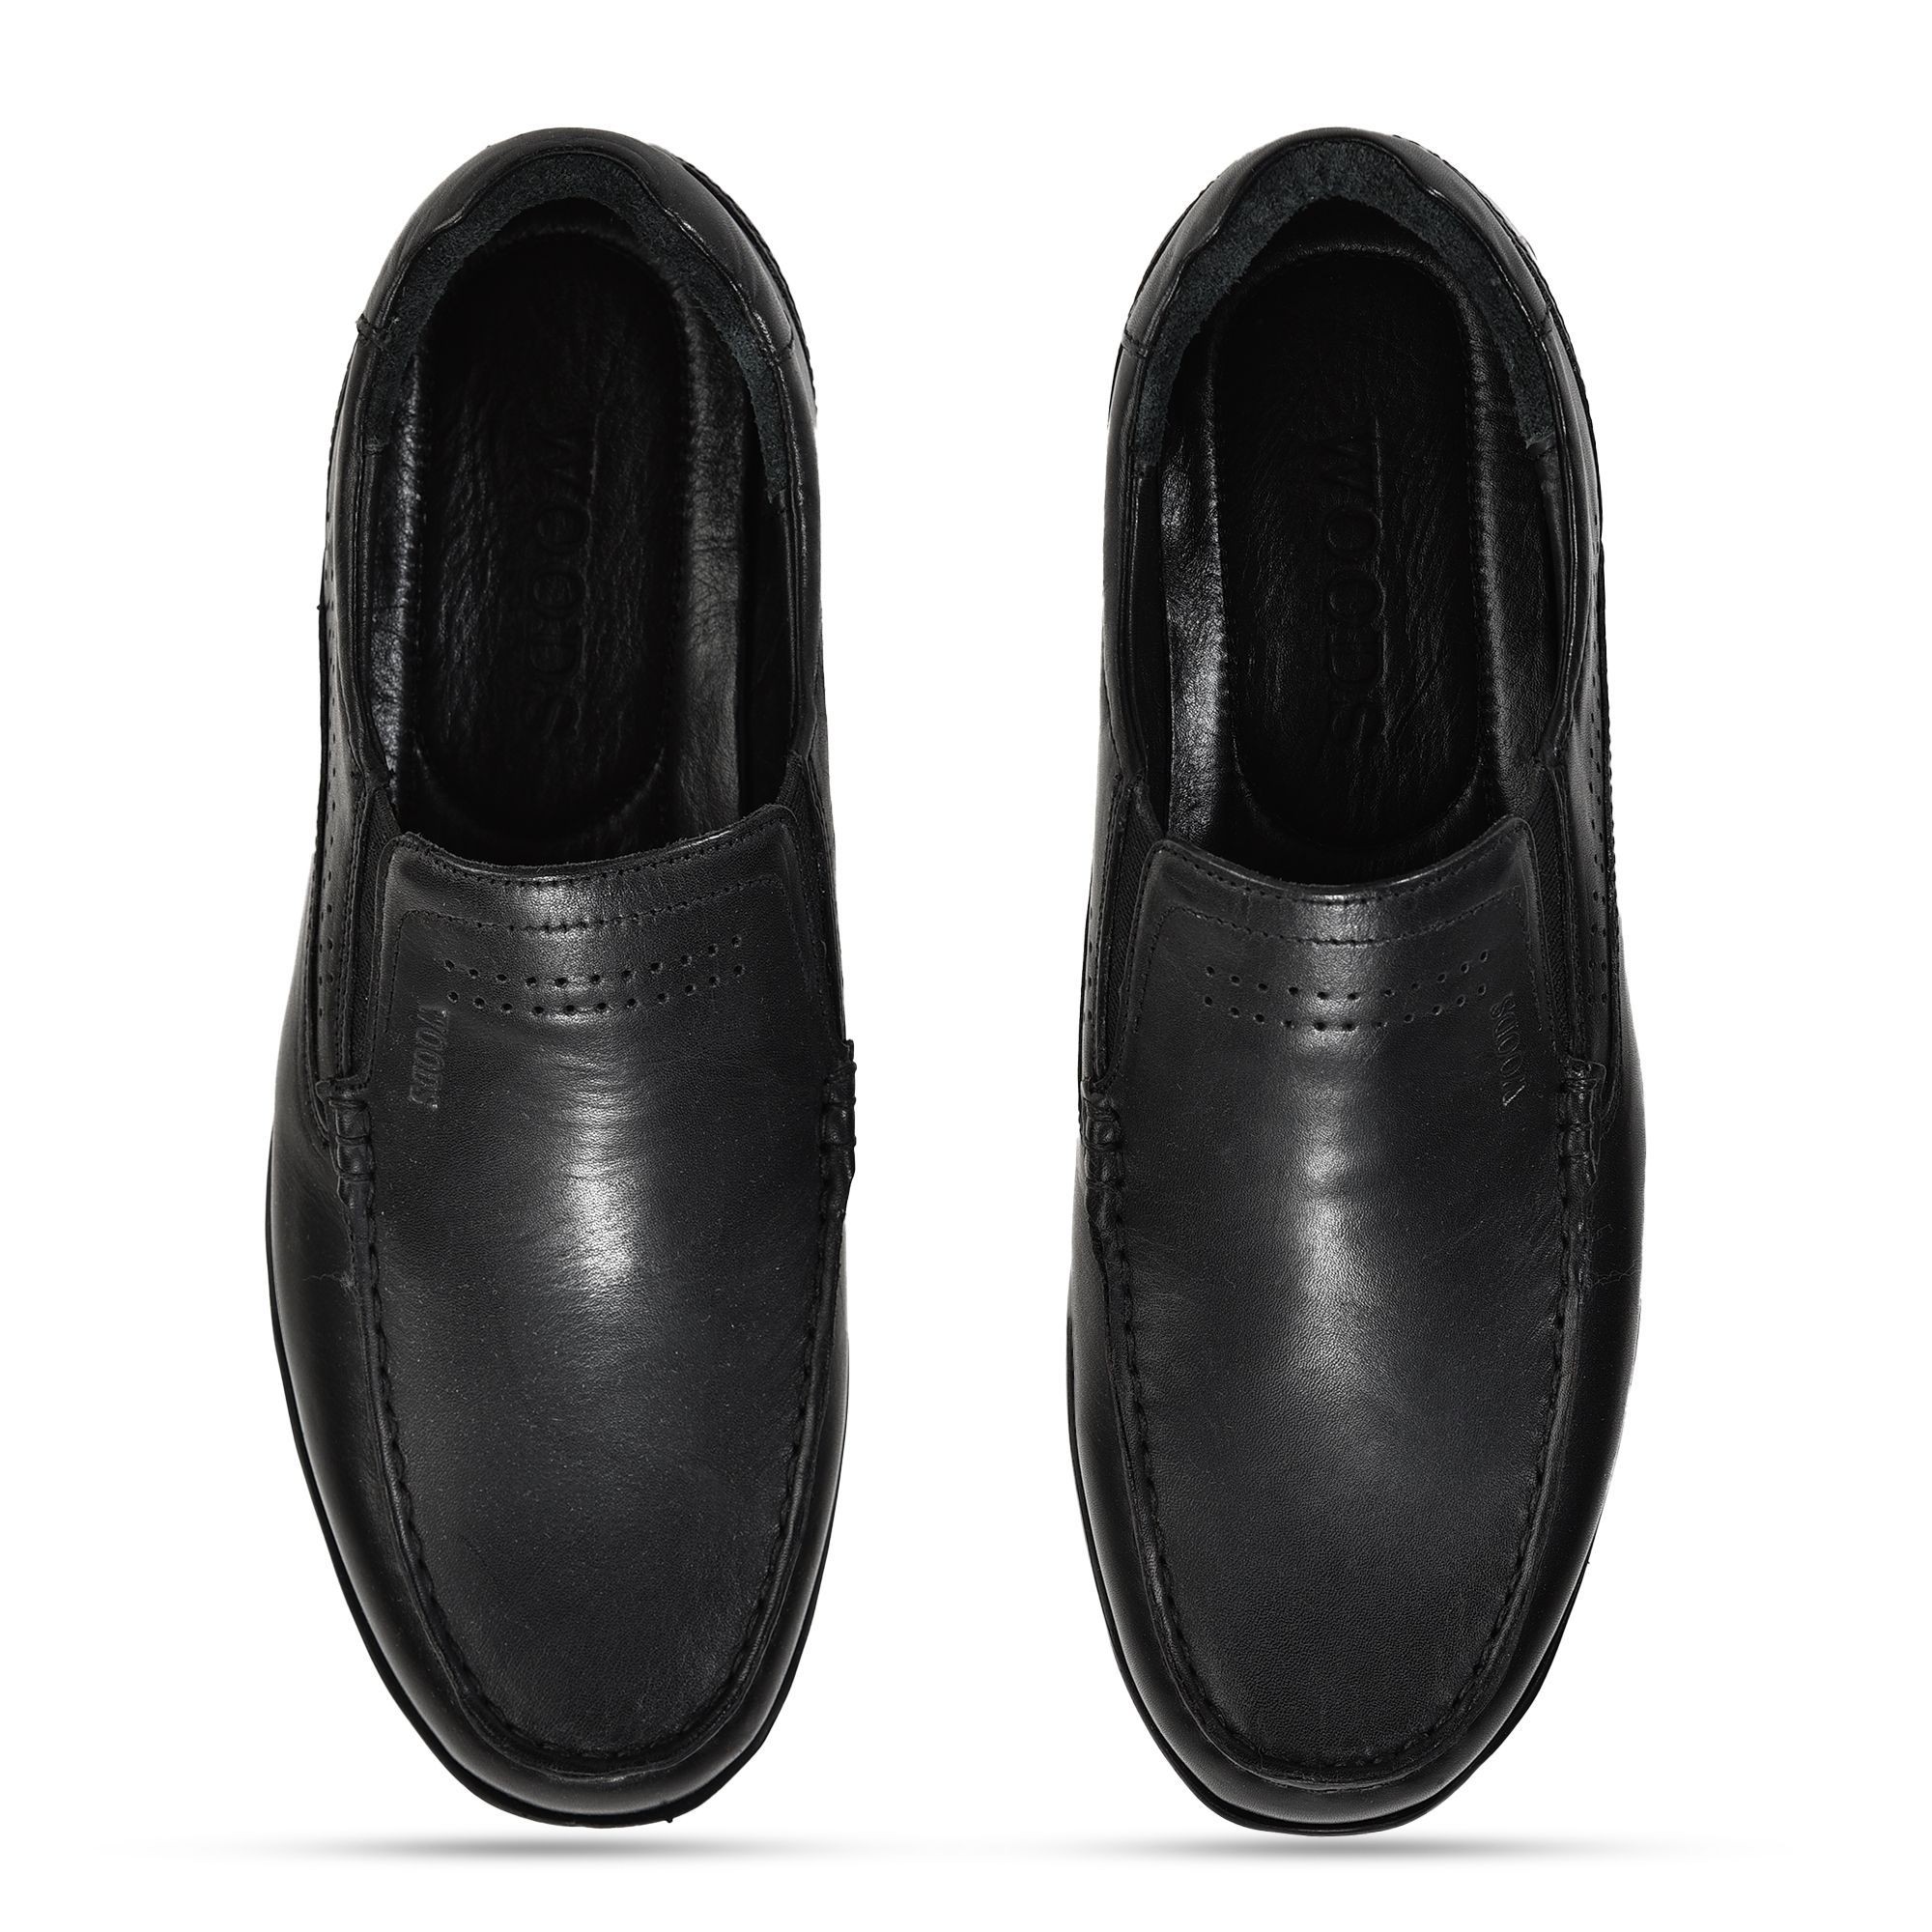 Black Slip-on shoe for men